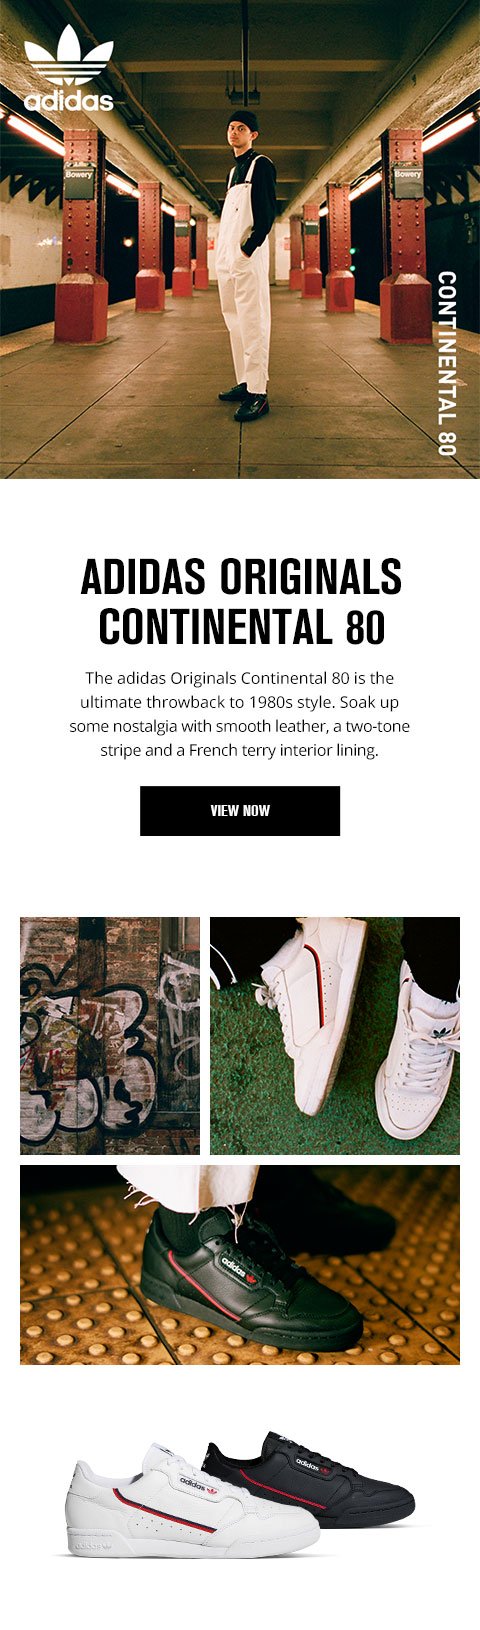 adidas originals continental 80 foot locker